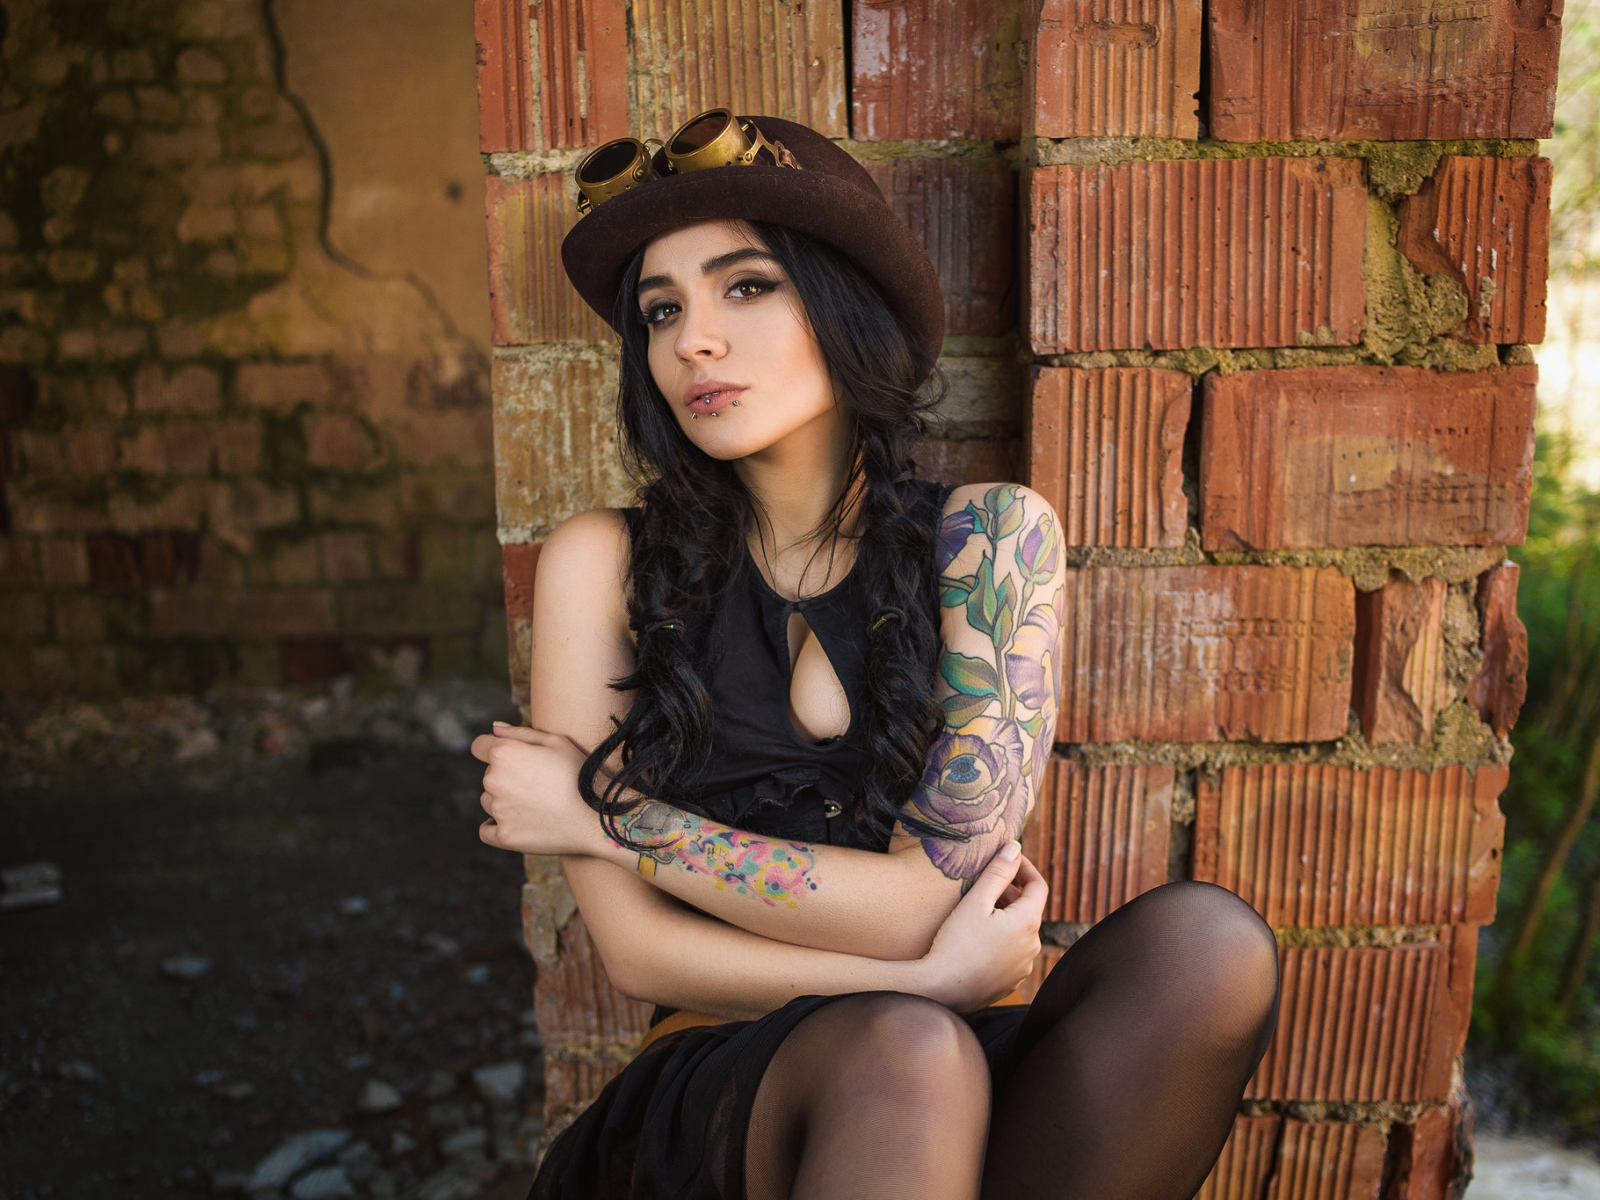 Девушка в шляпе с татуировками на руке сидит у стены